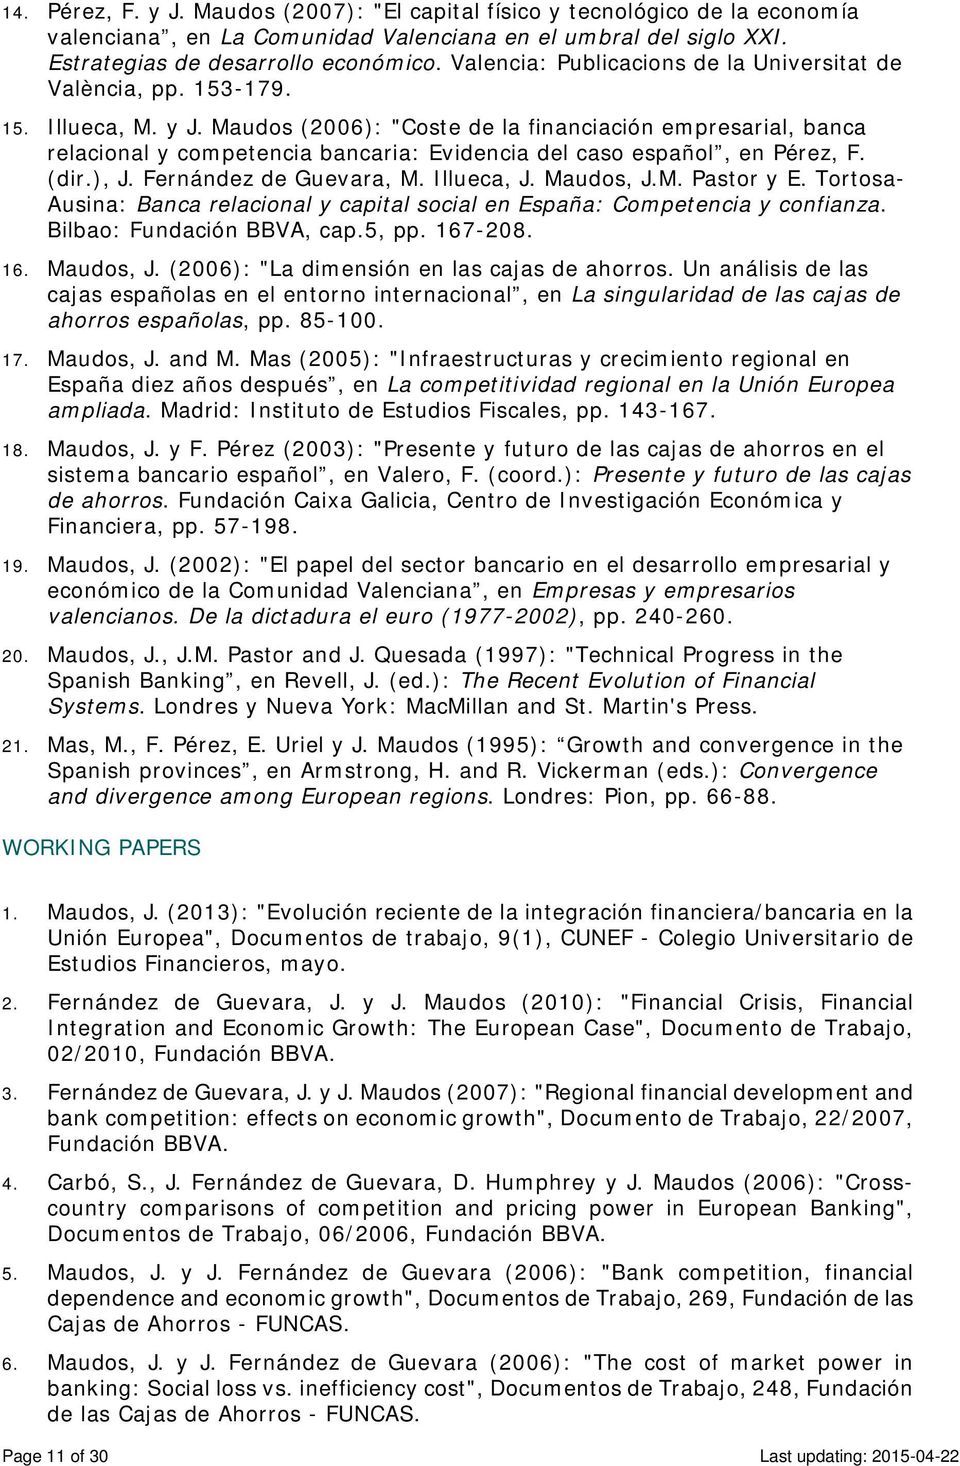 Maudos (2006): "Coste de la financiación empresarial, banca relacional y competencia bancaria: Evidencia del caso español, en Pérez, F. (dir.), J. Fernández de Guevara, M. Illueca, J. Maudos, J.M. Pastor y E.